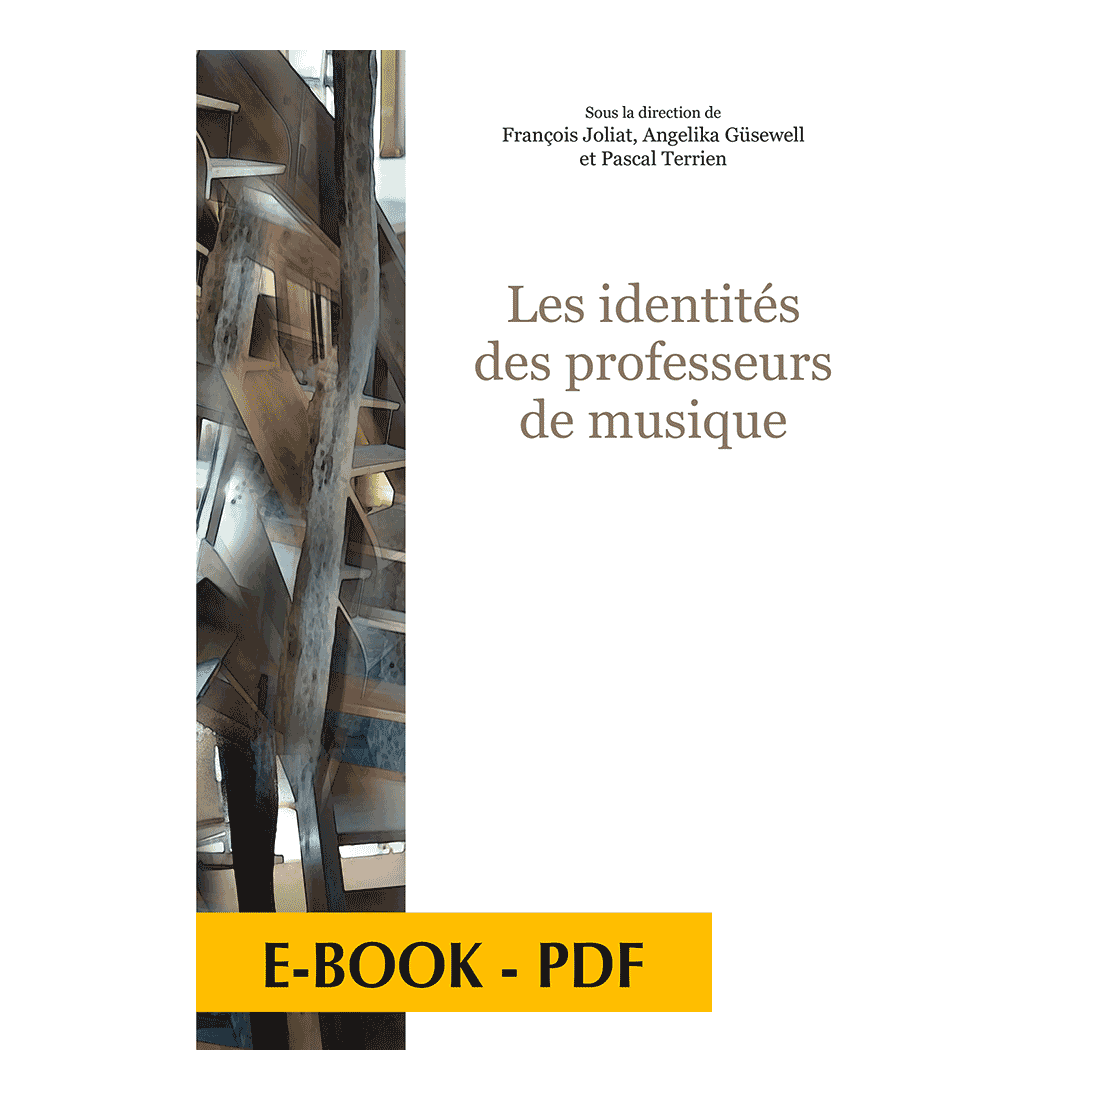 Les identités des professeurs de musique - E-book PDF